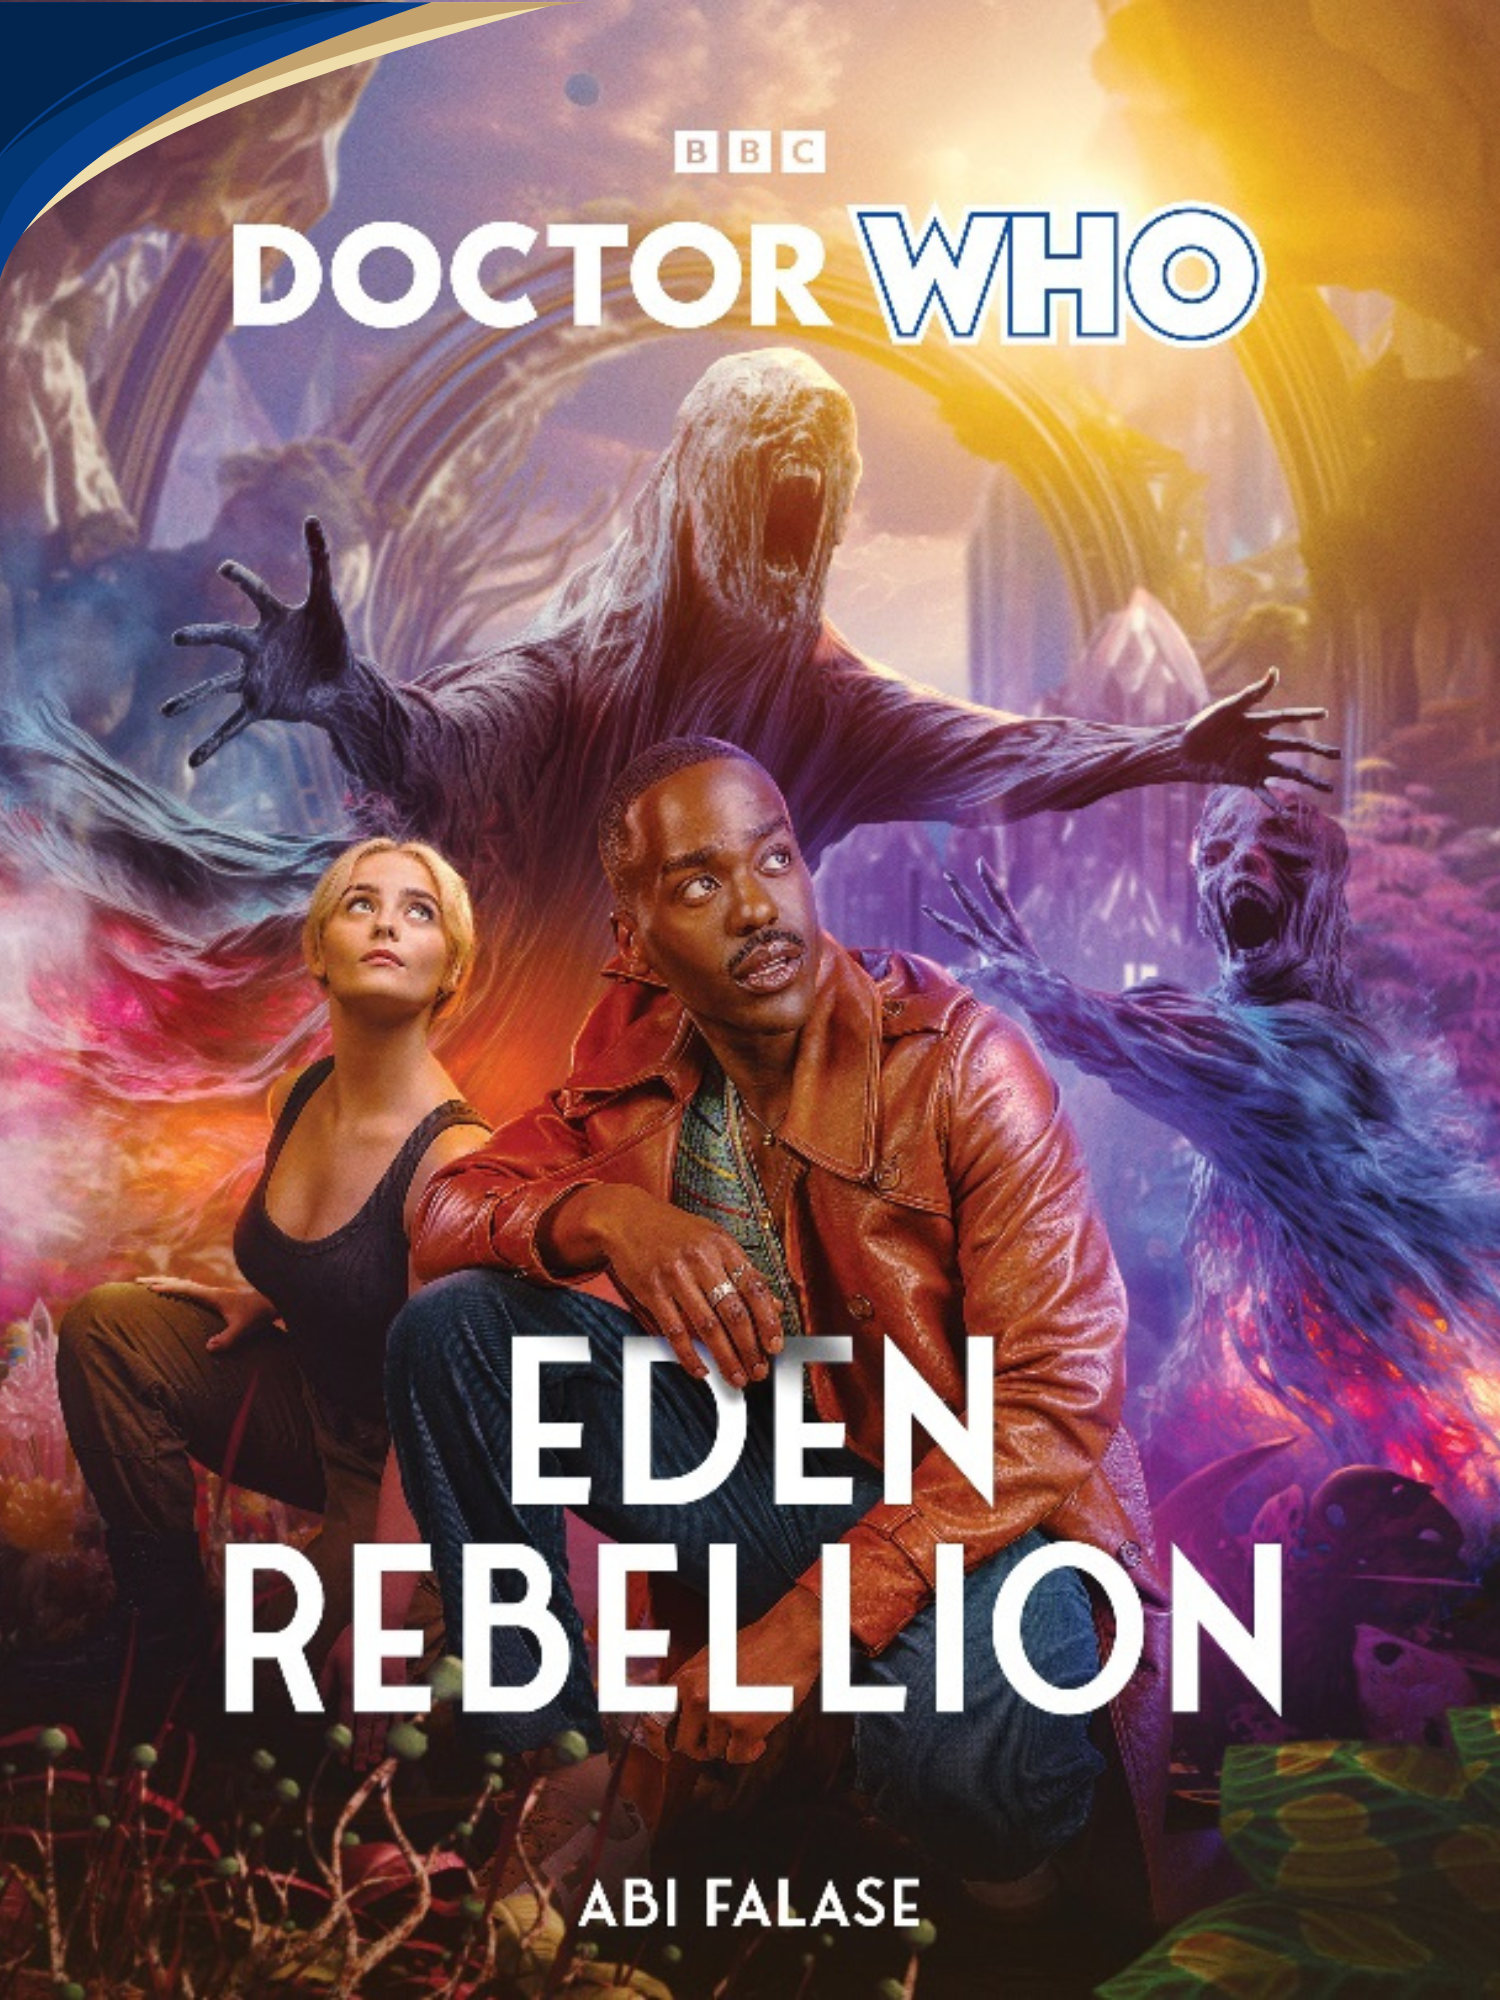 Doctor Who: Eden Rebellion, by Abi Falase (book)